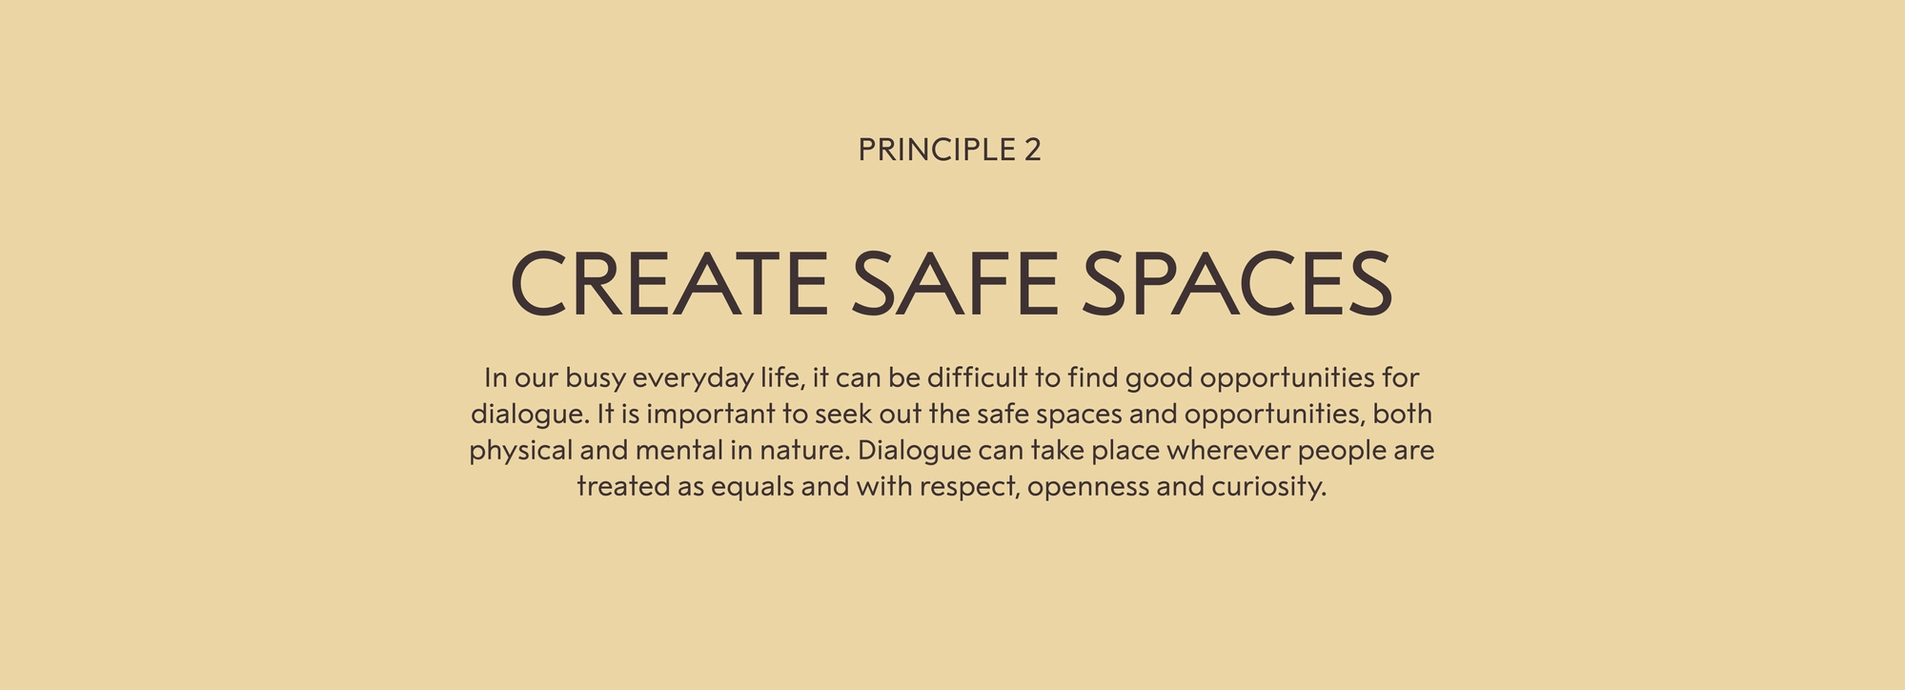 Principle 2: Create safe spaces